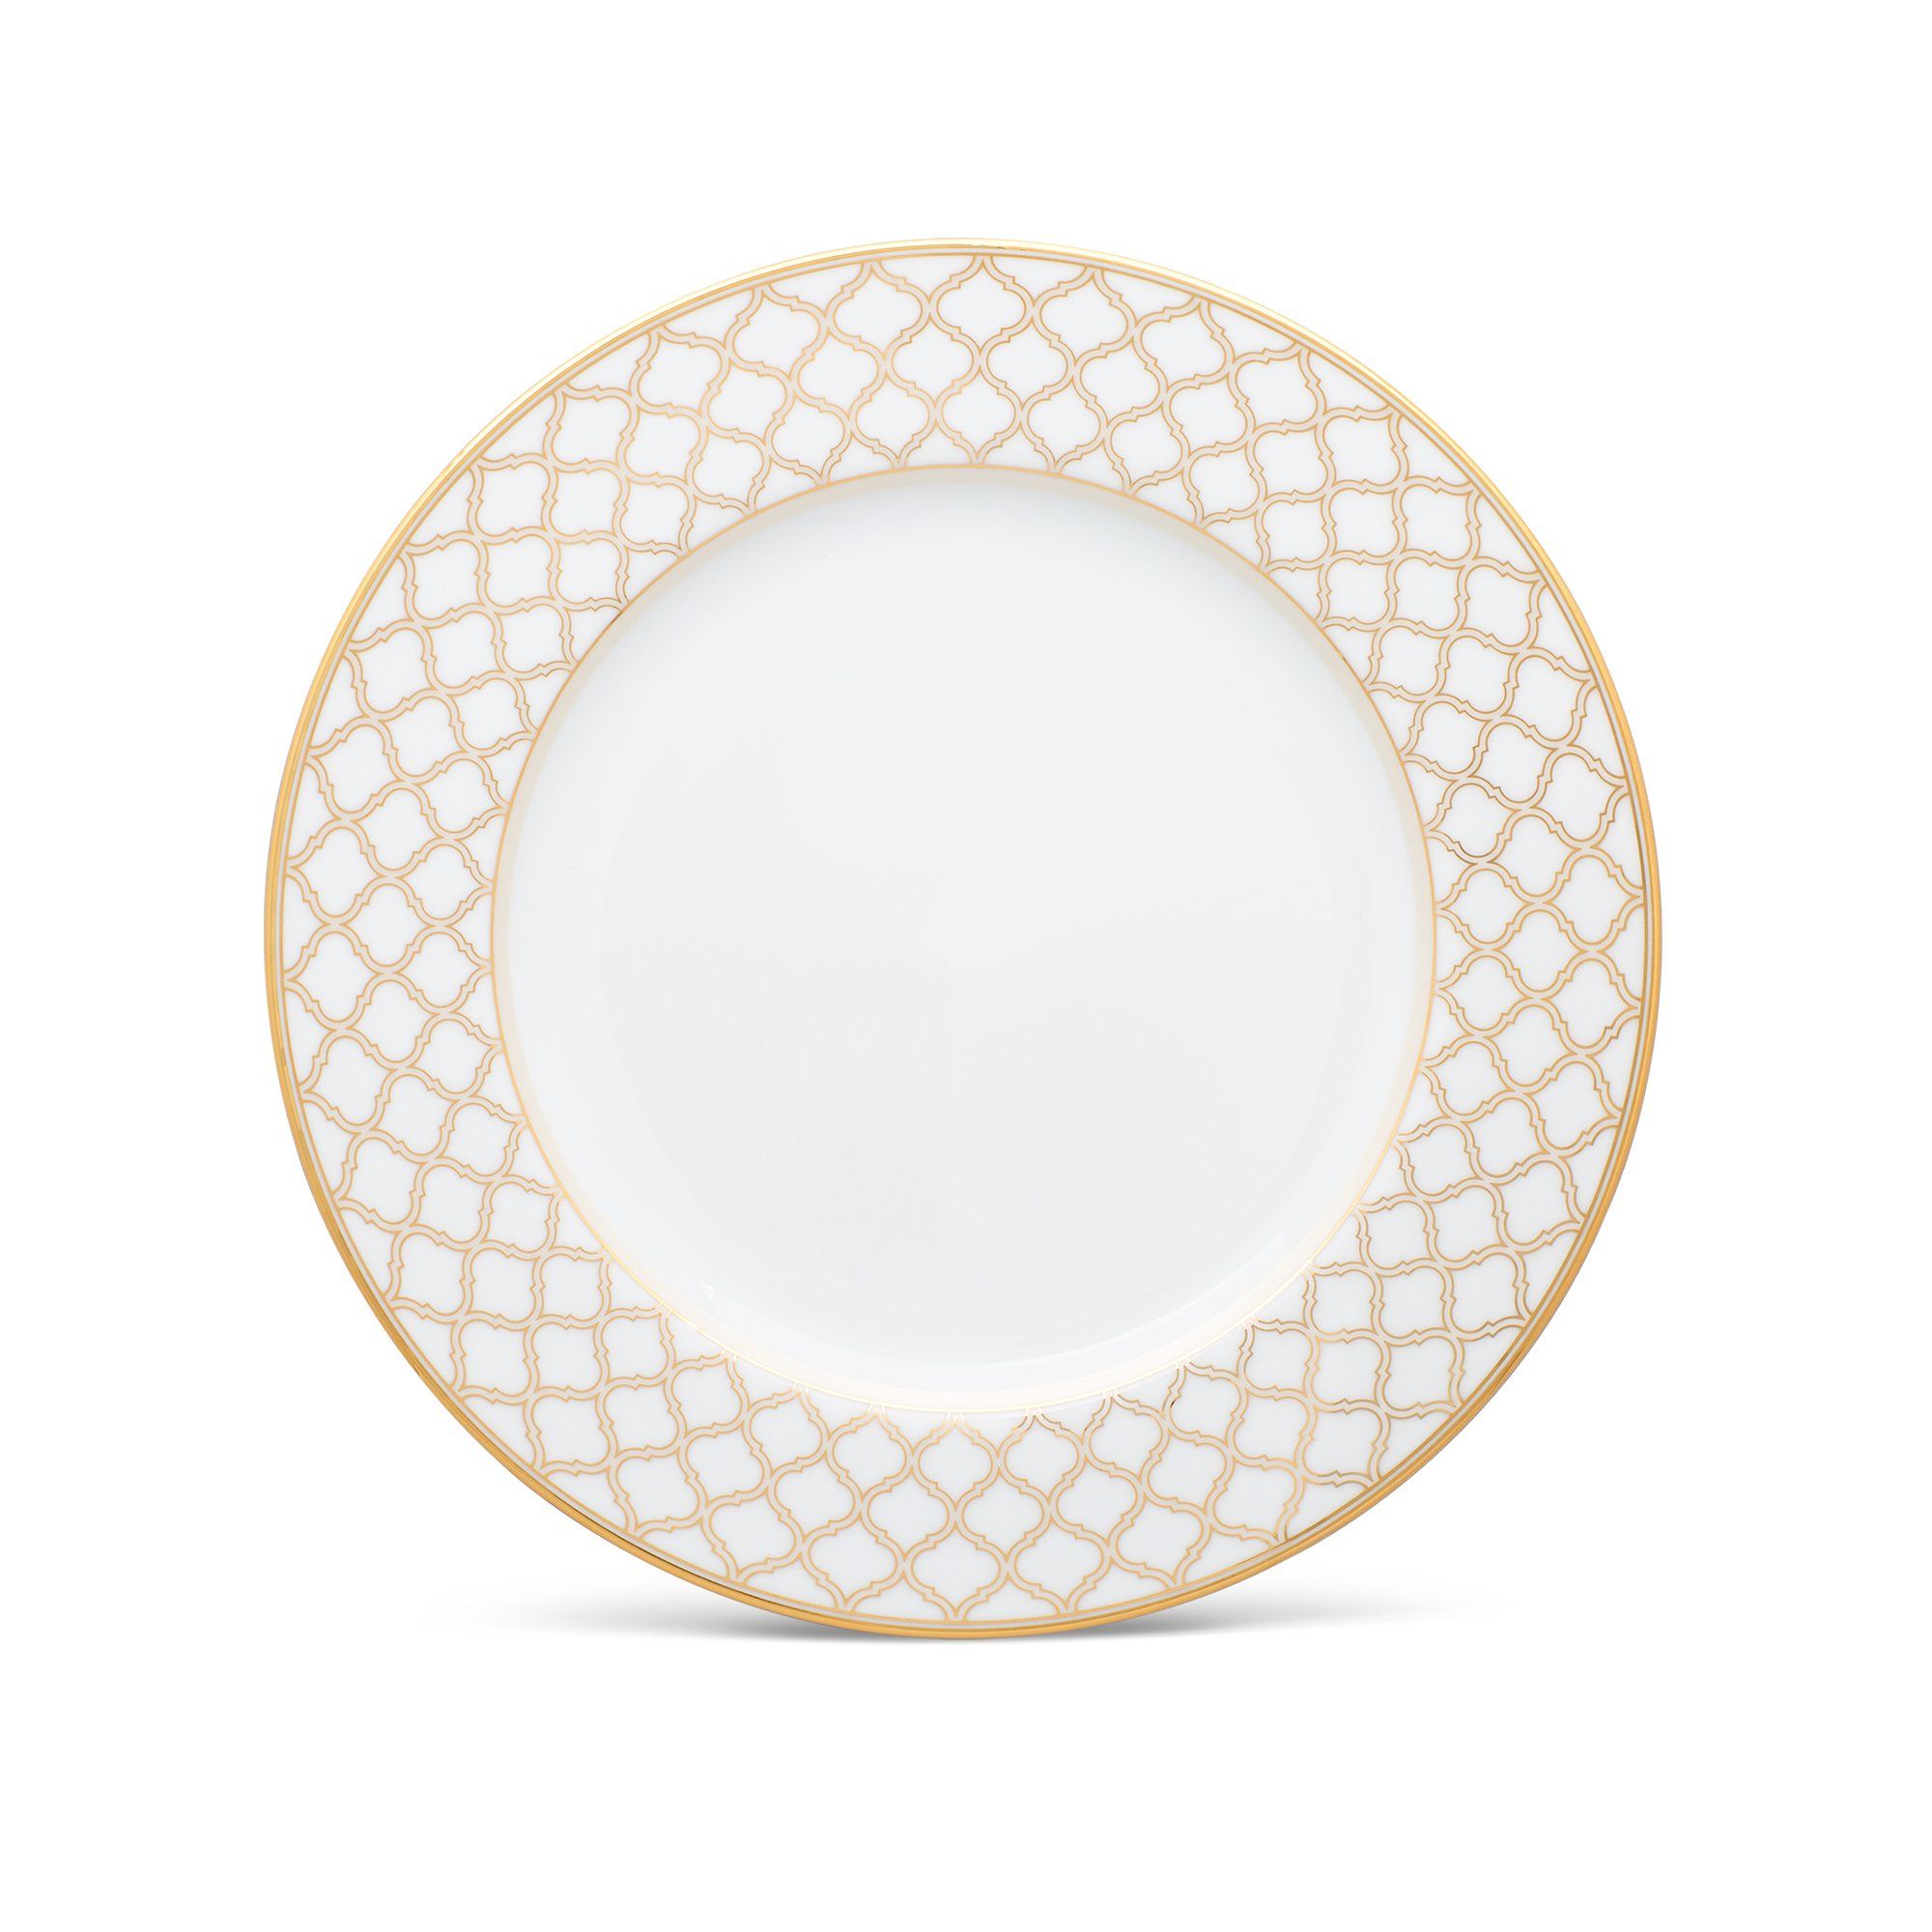  Đĩa tròn cỡ lớn đường kính 26,8cm sứ trắng | Eternal Palace Gold 1728L-91020 